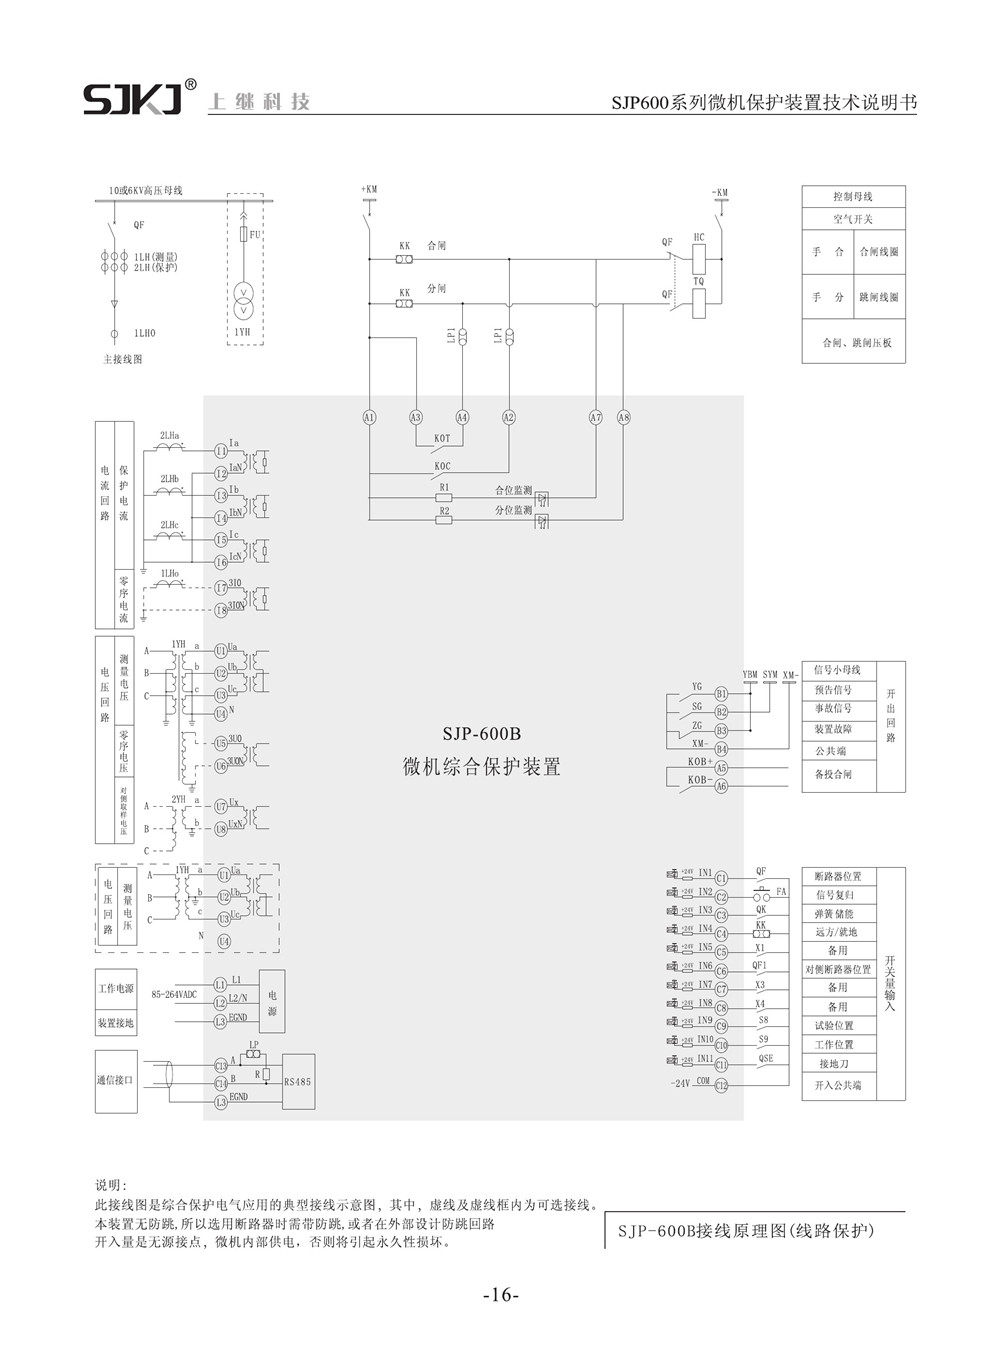 SJP-600B微机综合保护装置产品参数图片二